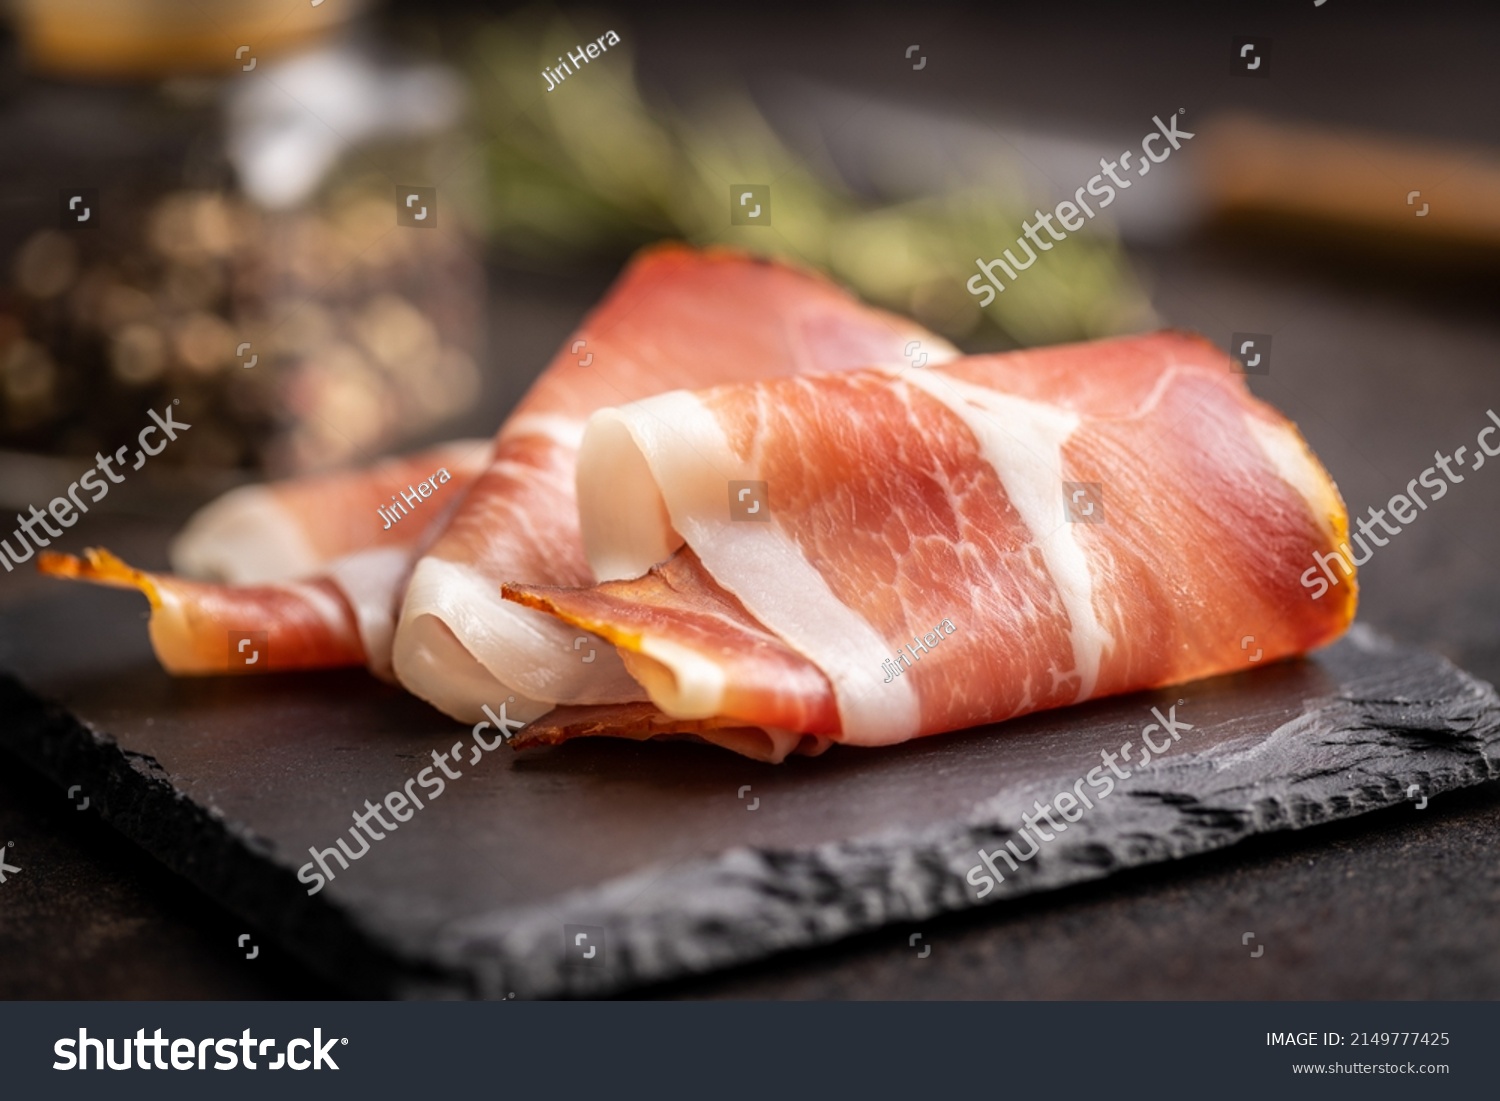 Sliced schwarzwald ham. Dried prosciutto ham on a cutting board. #2149777425